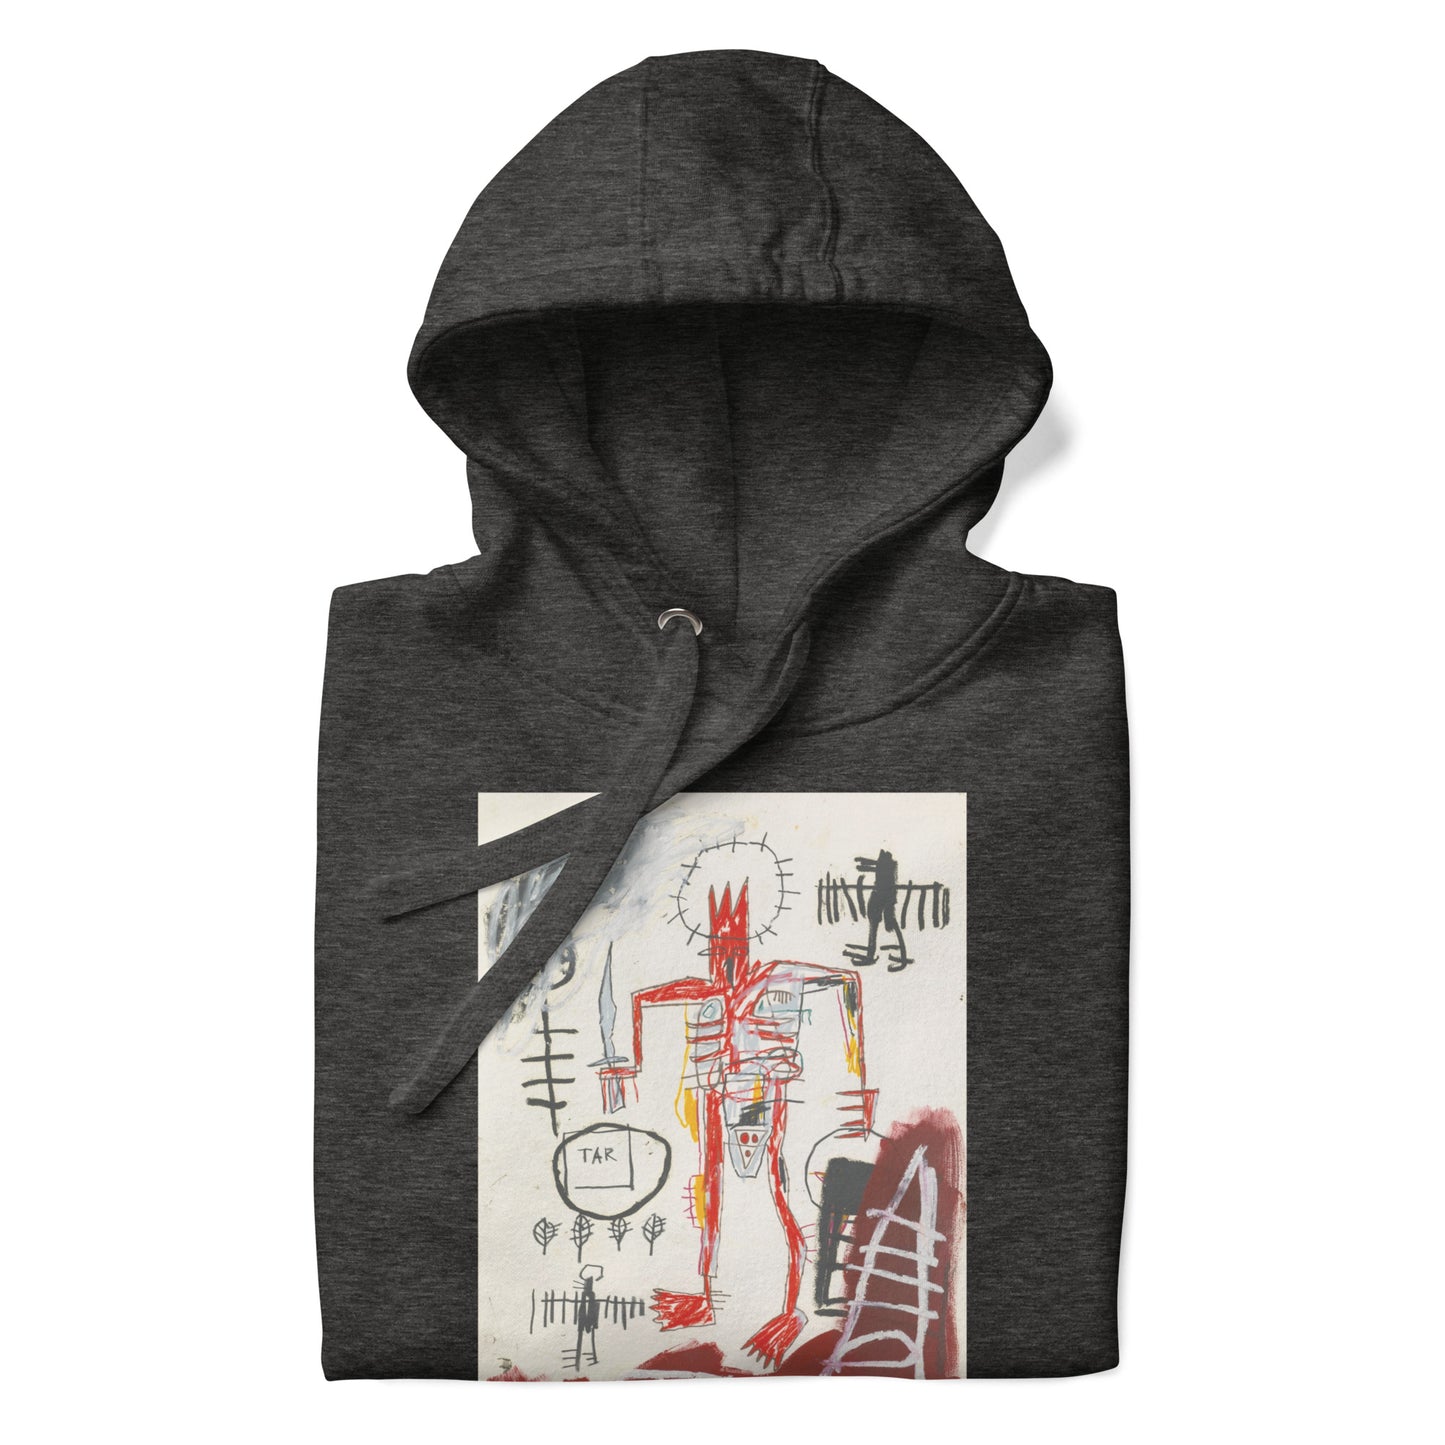 Jean-Michel Basquiat "Untitled" Artwork Printed Premium Streetwear Sweatshirt Hoodie Charcoal Grey